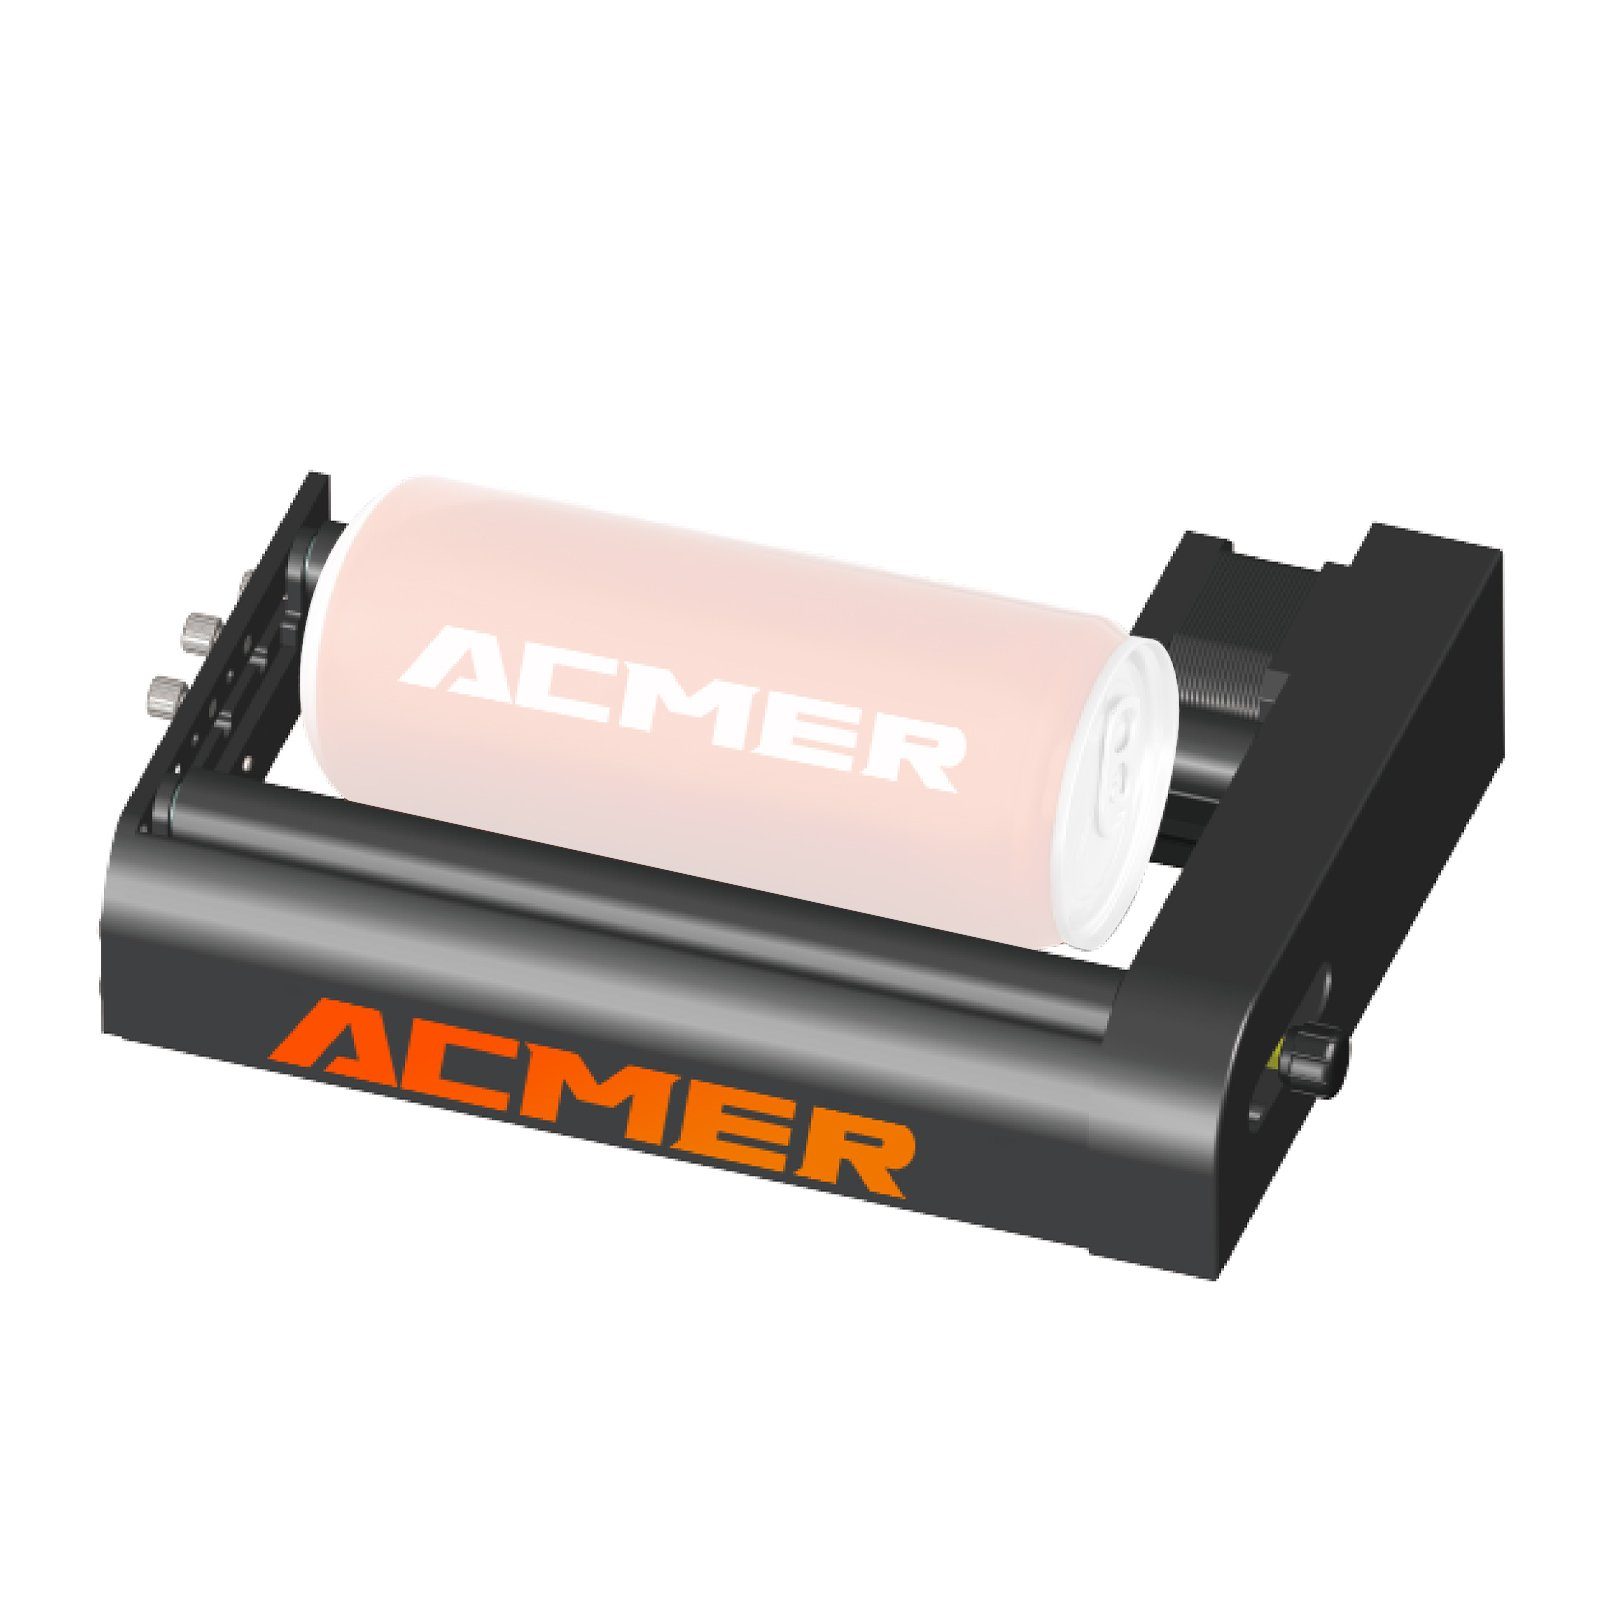 Acmer Schnitzgerät Lasergravurwalze für zylindrische Objekte mit um 360°